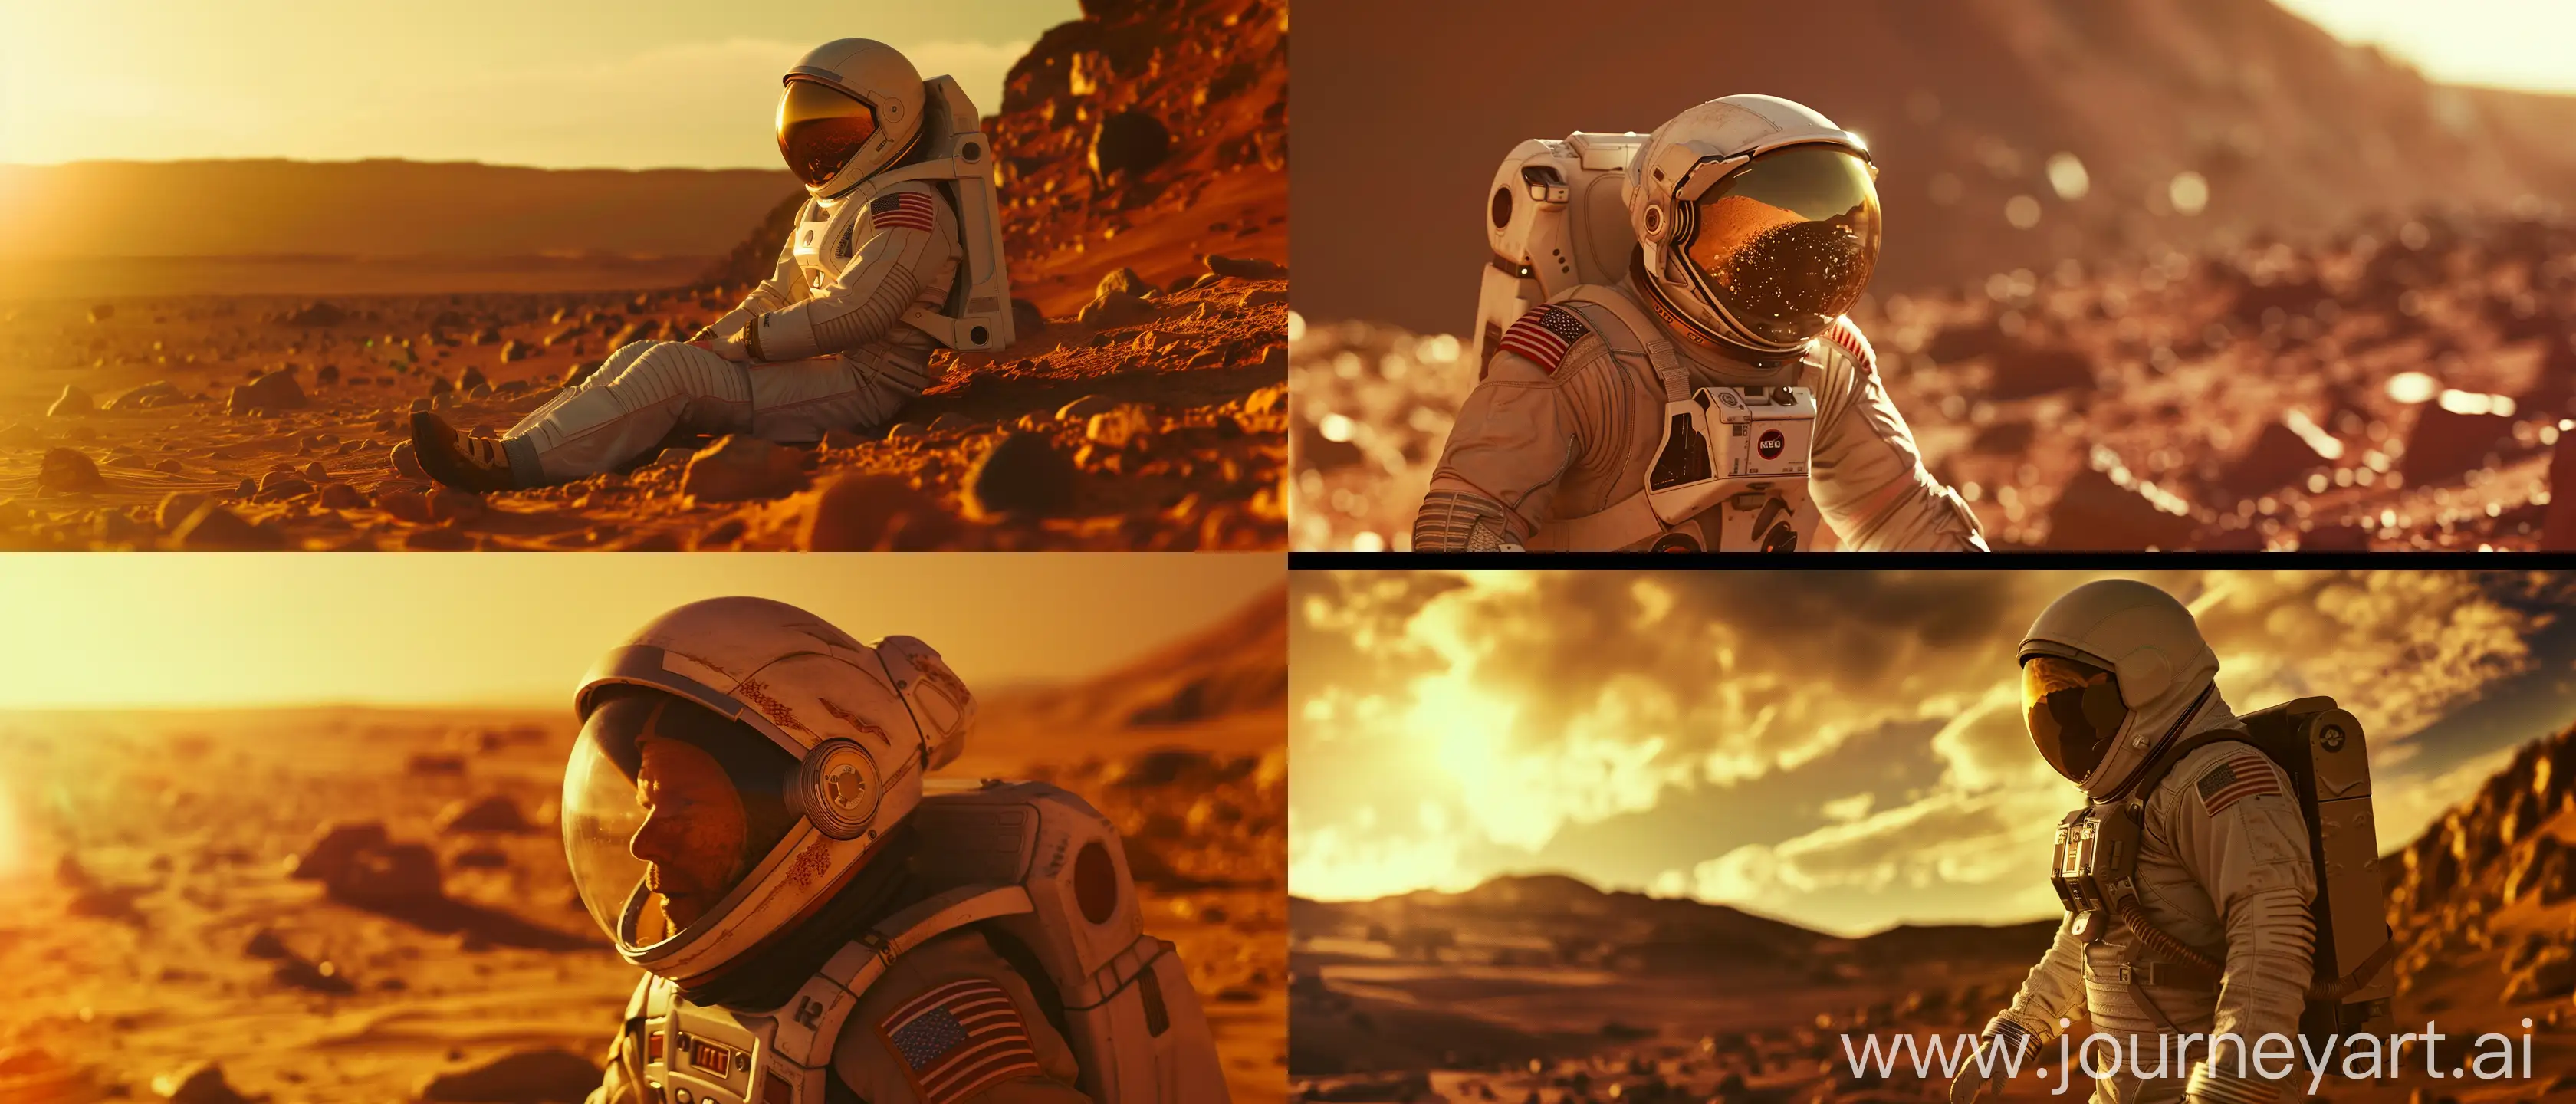 Astronaut-Marvels-at-Mars-Vastness-in-Cinematic-Still-Shot